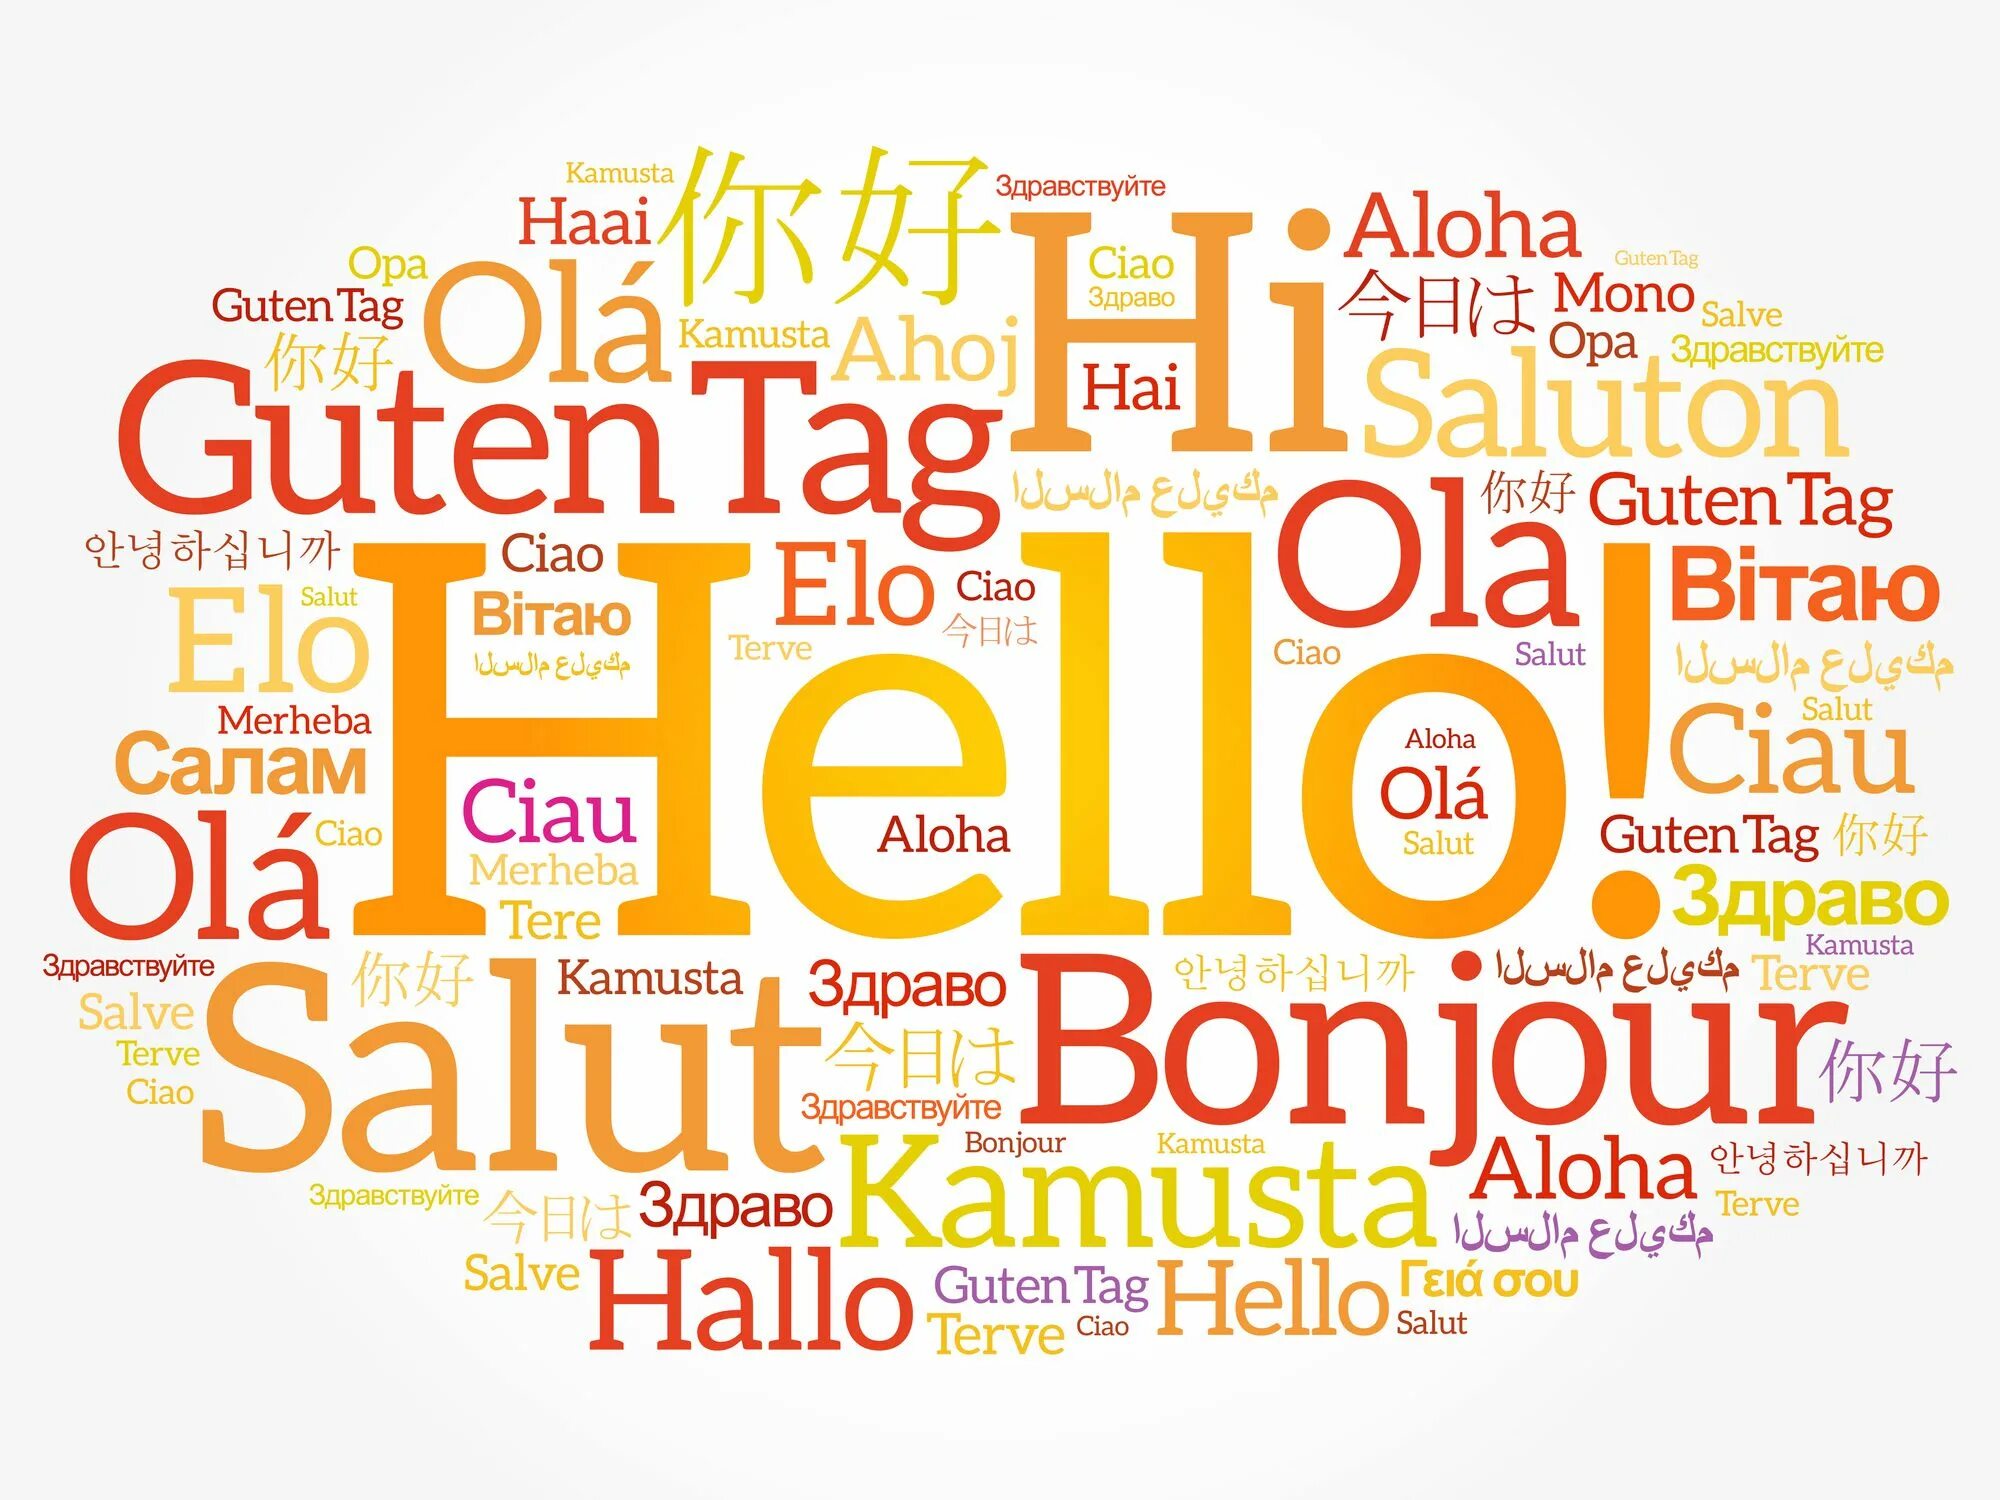 Разговор на разных языках. Приветствие на разных языках. Облако слов спасибо на разных языках. Облако слов благодарности на разных языках.